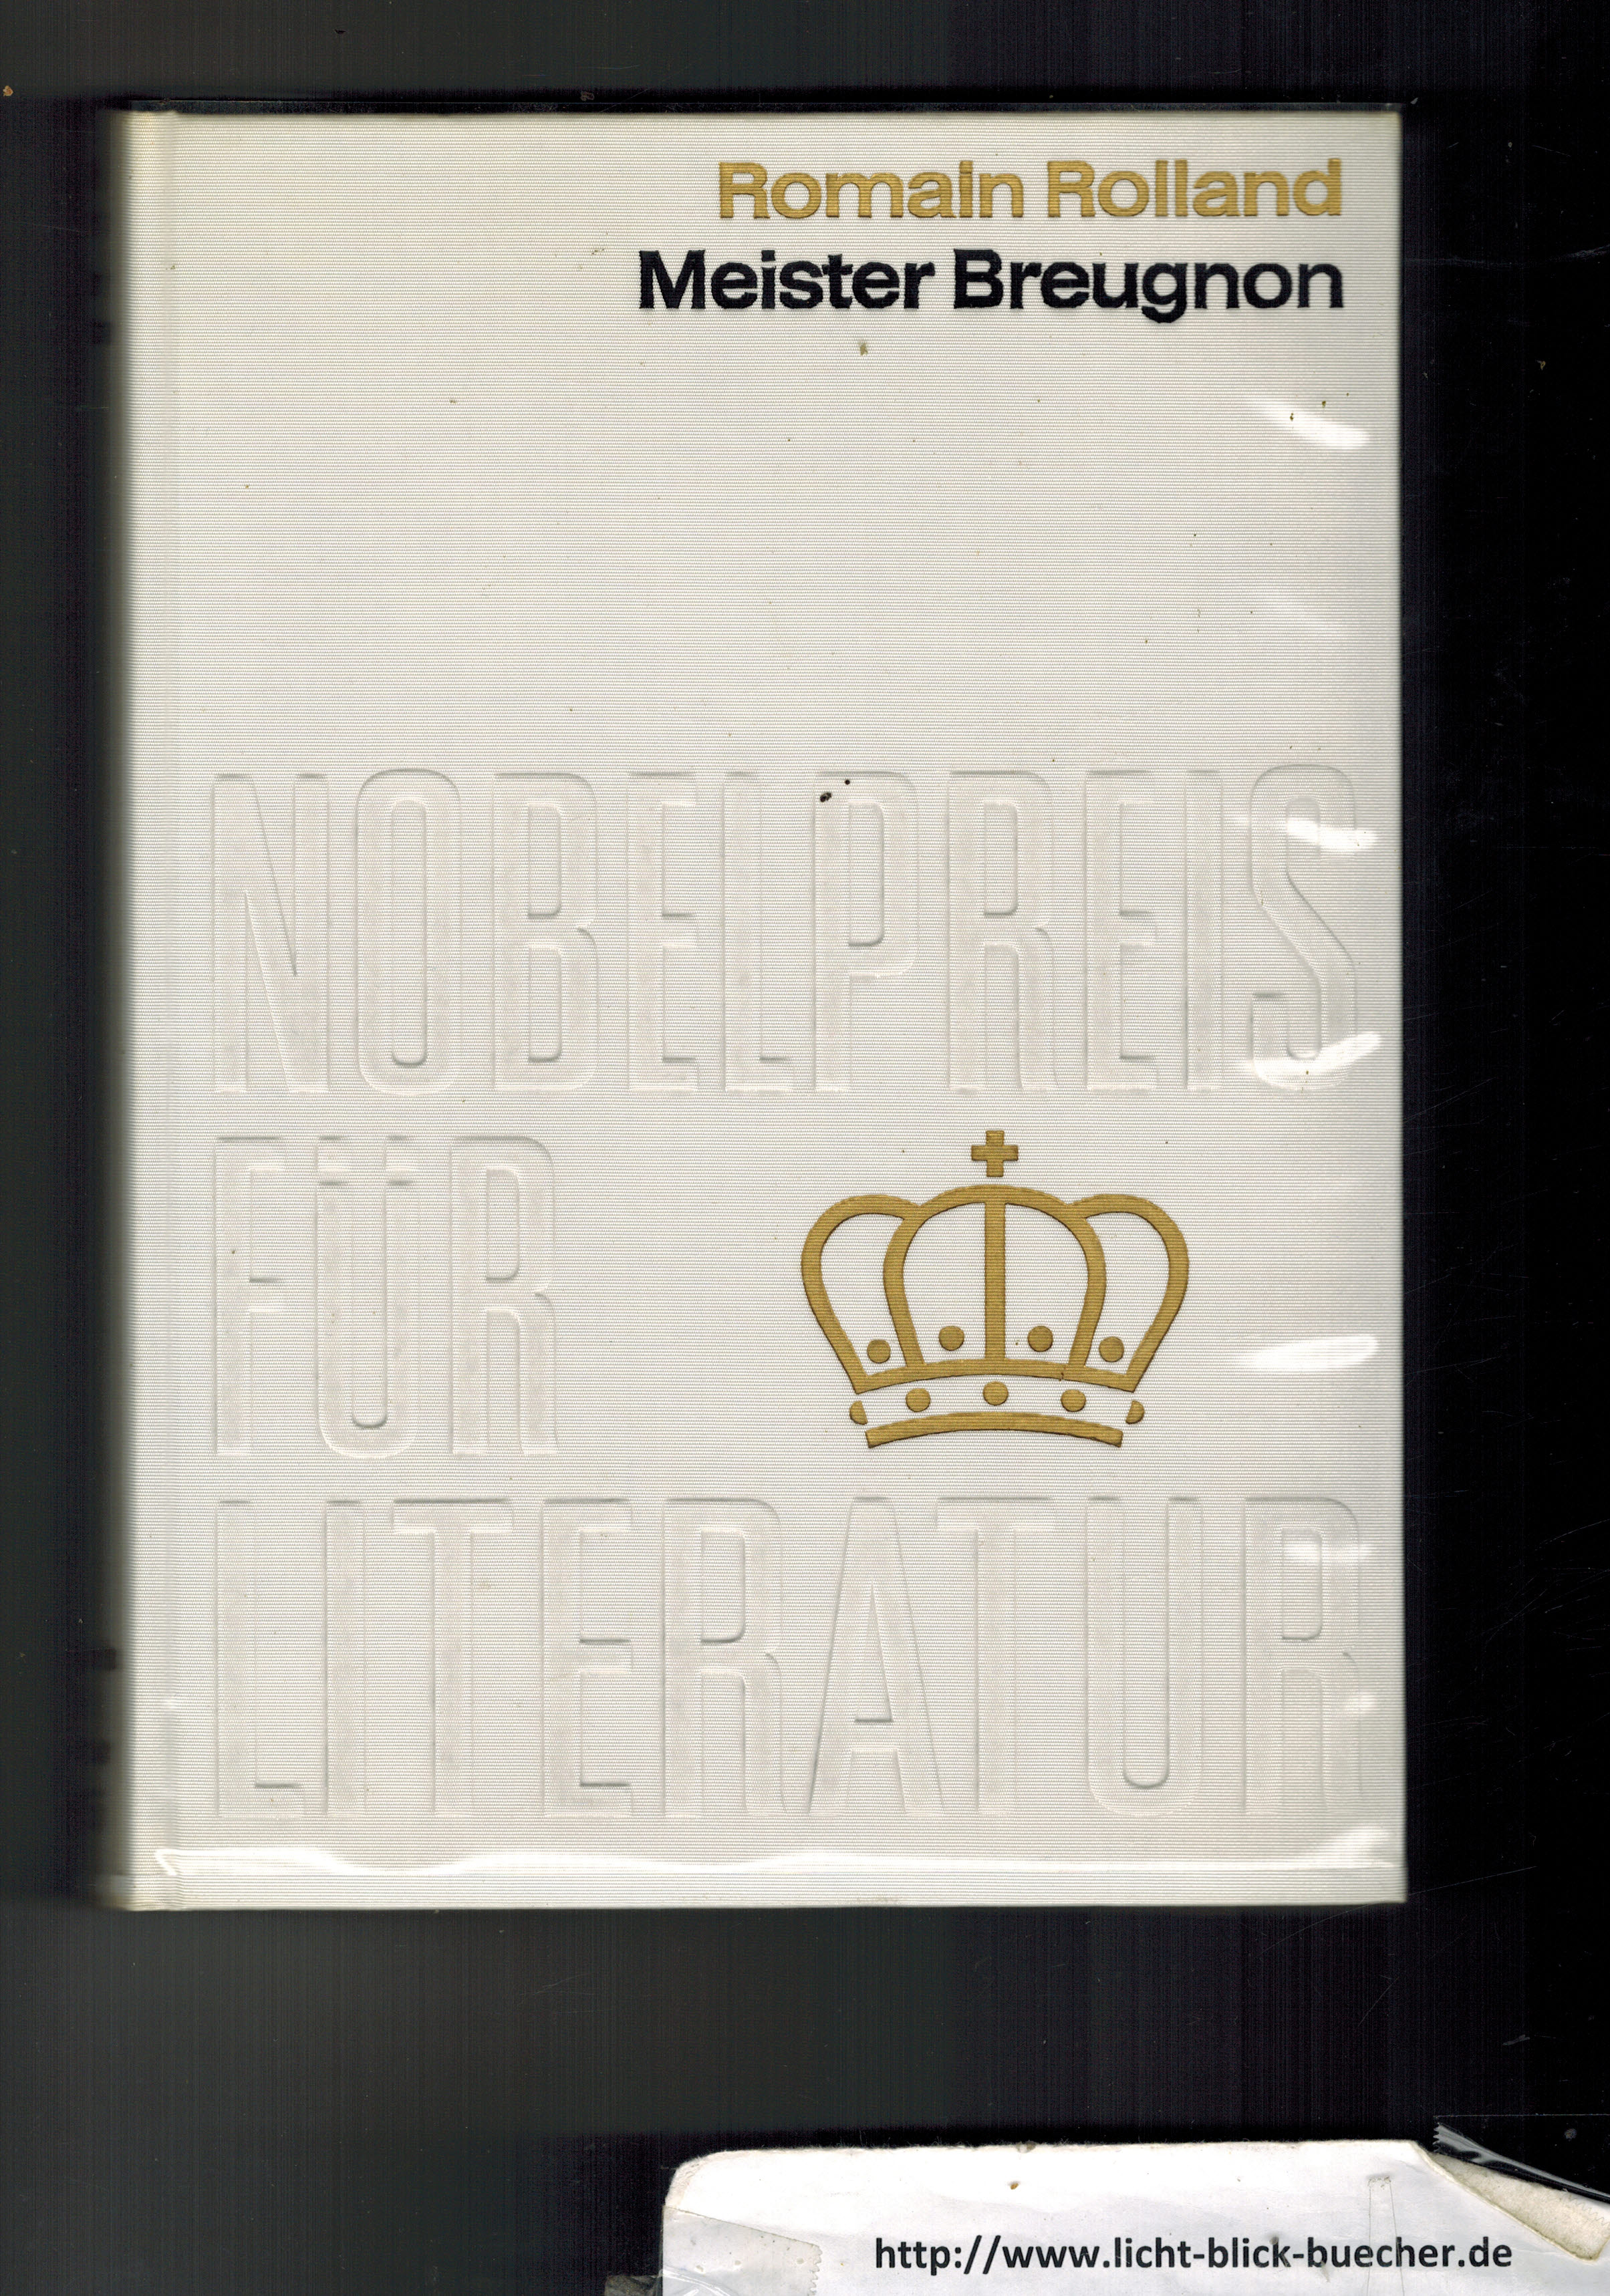 Nobelpreis der LiteraturDie Sammlung Nobelpreis fuer Literatur besteht unter der Schirmherrschaft der schwedischen Akademie und der Nobelpreisstiftung Stockholm